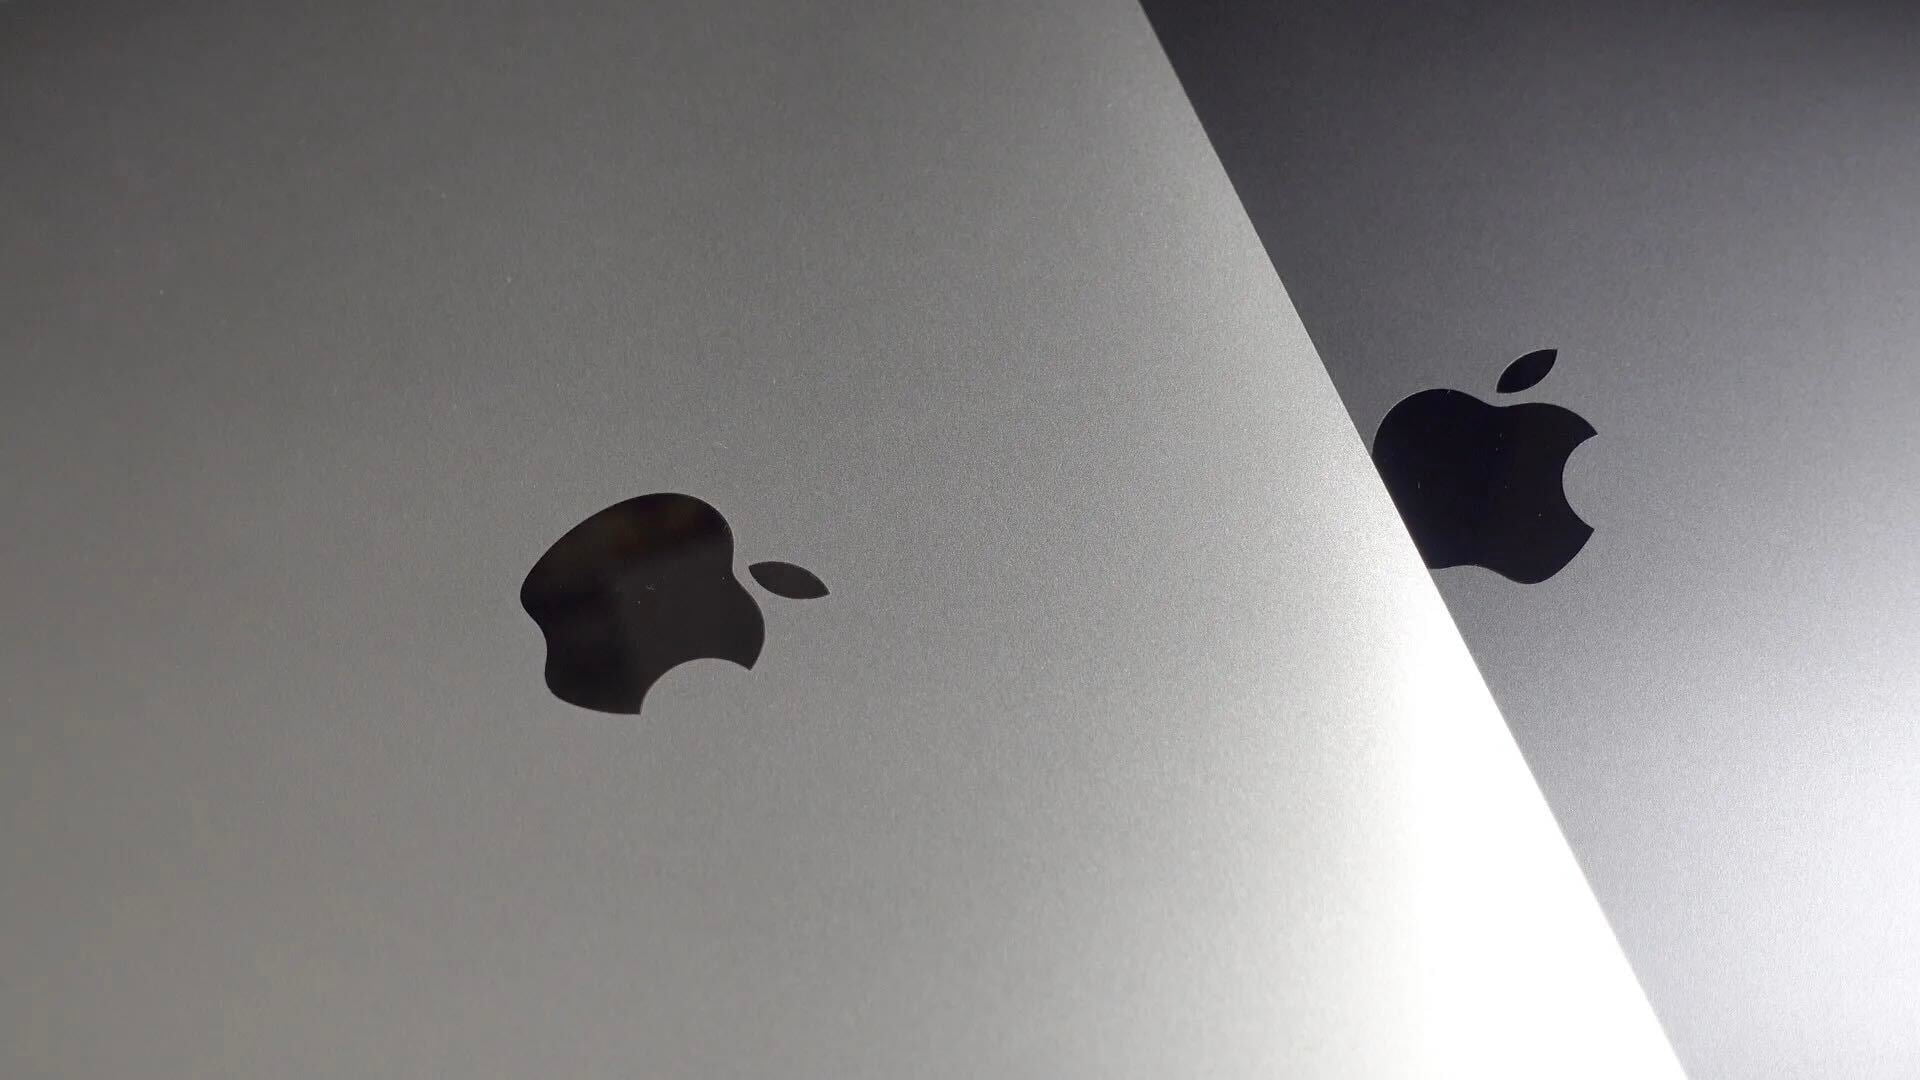 M1 MacBook Air vs Pro I/O comparison